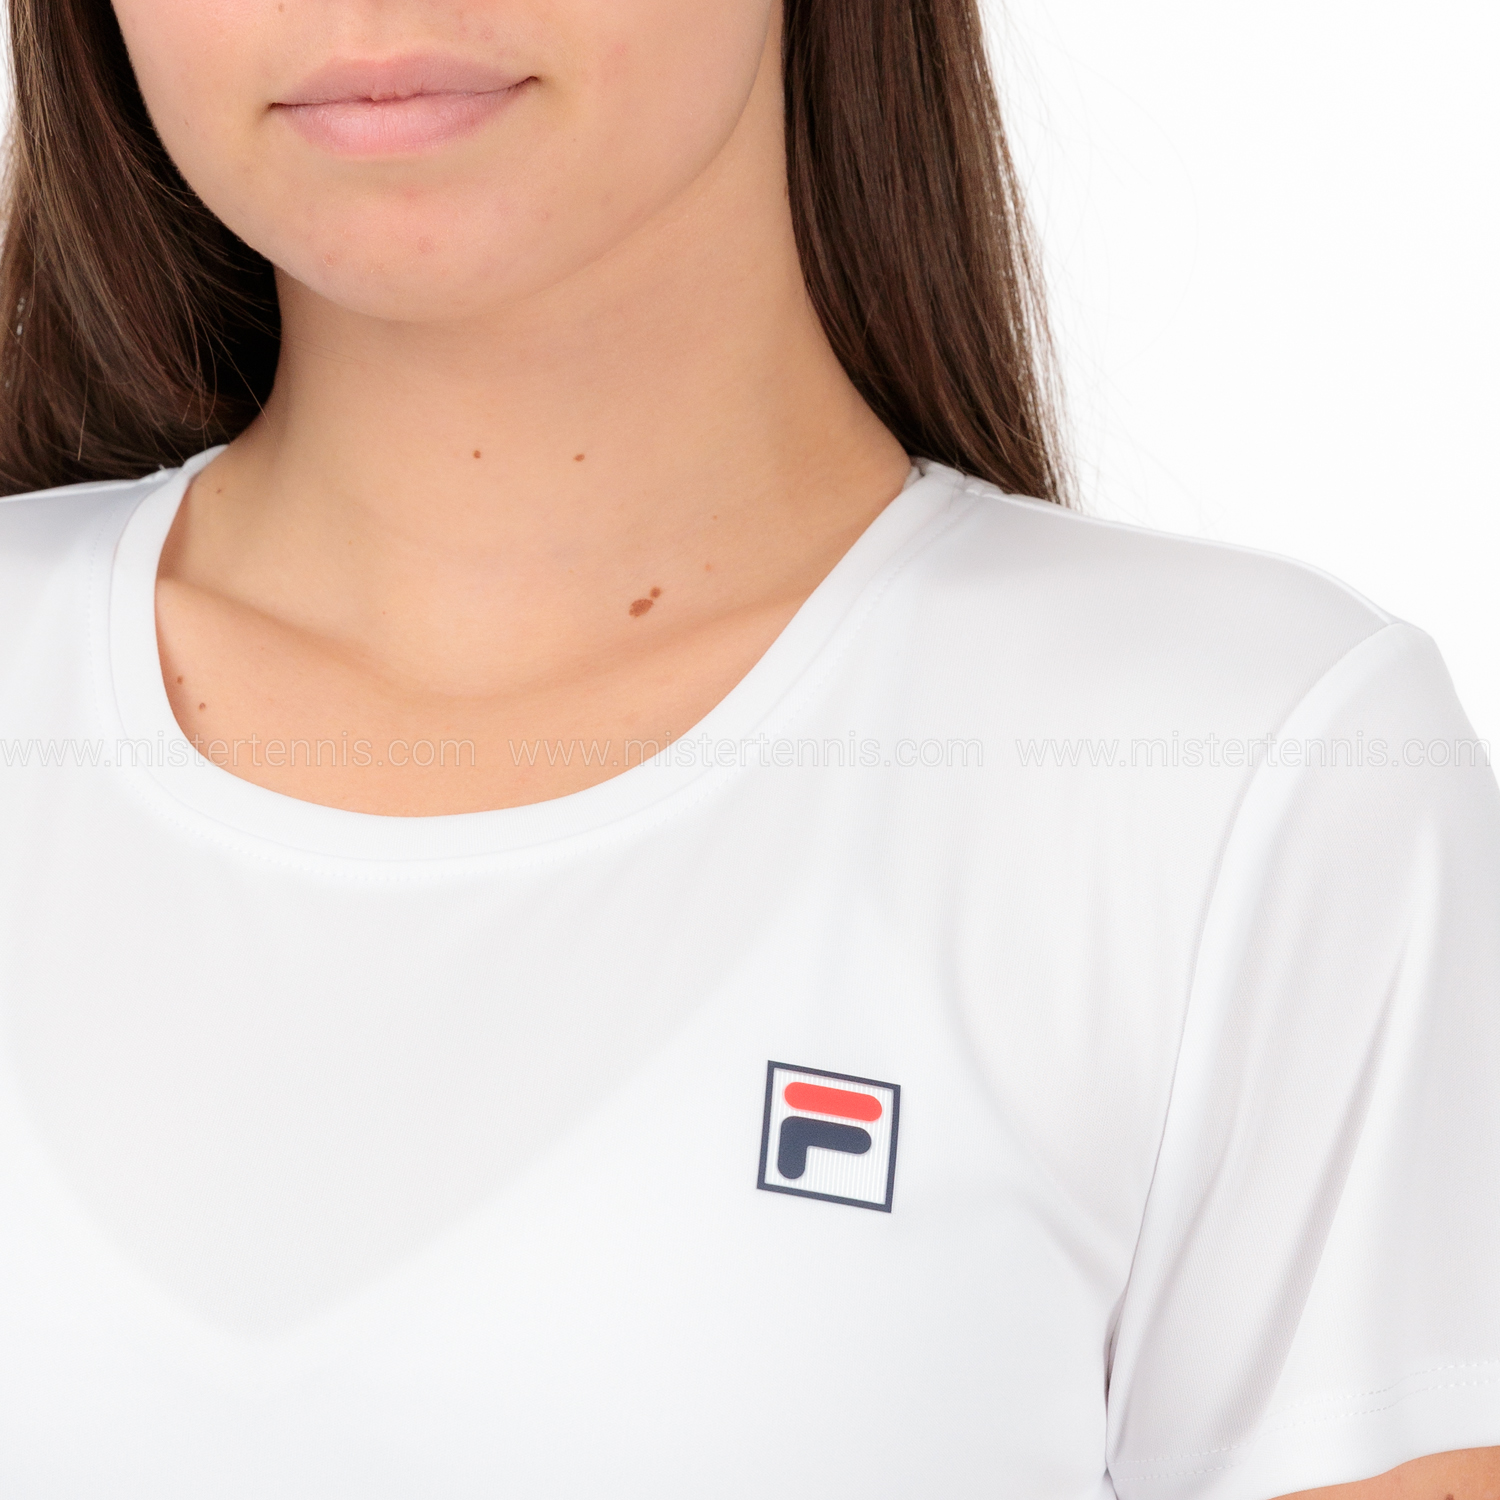 Fila Leonie Camiseta - White